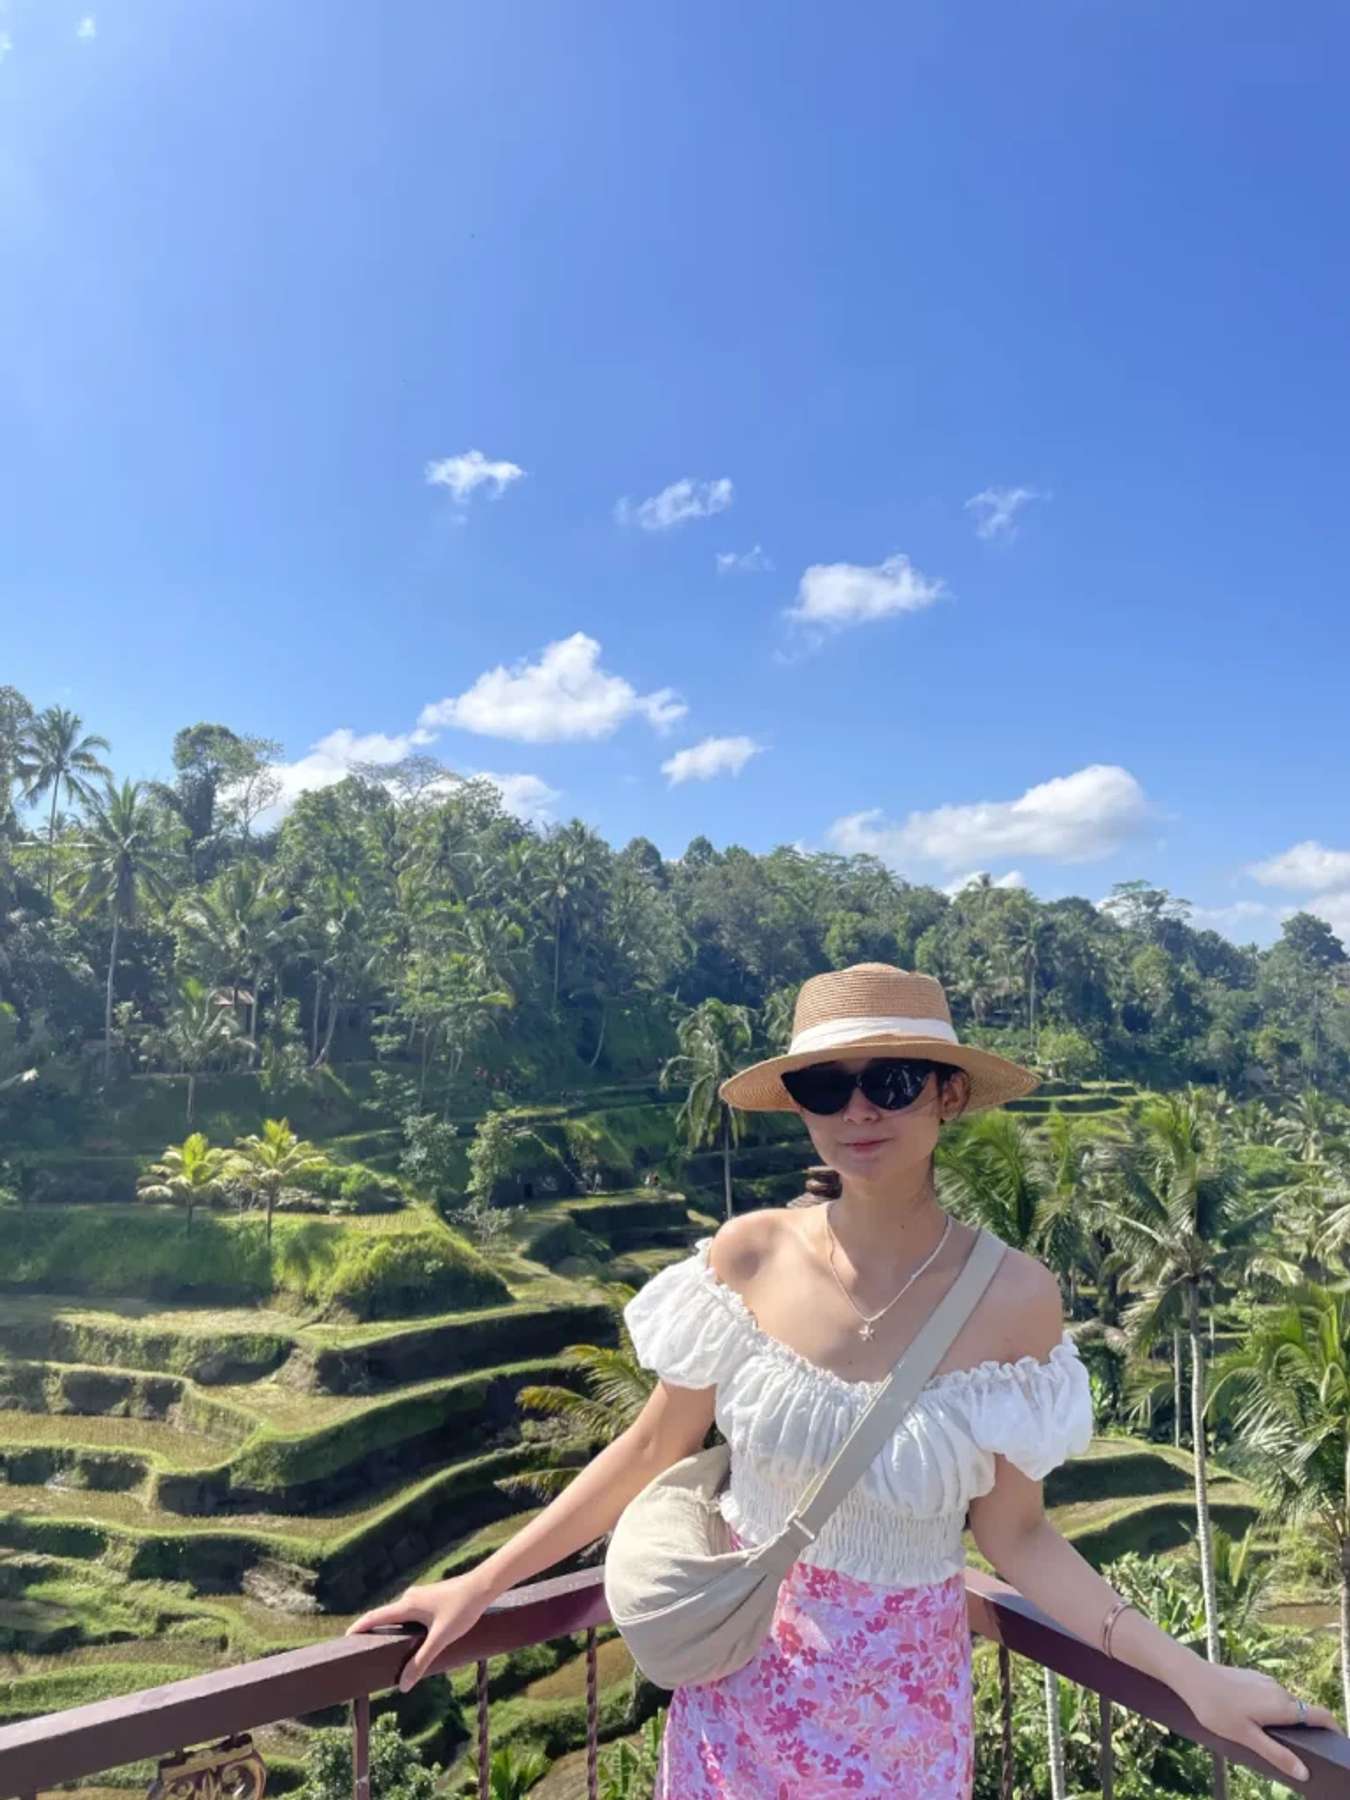 Trời trong xanh ở Ceking rice terrace - Du lịch Bali 2 ngày